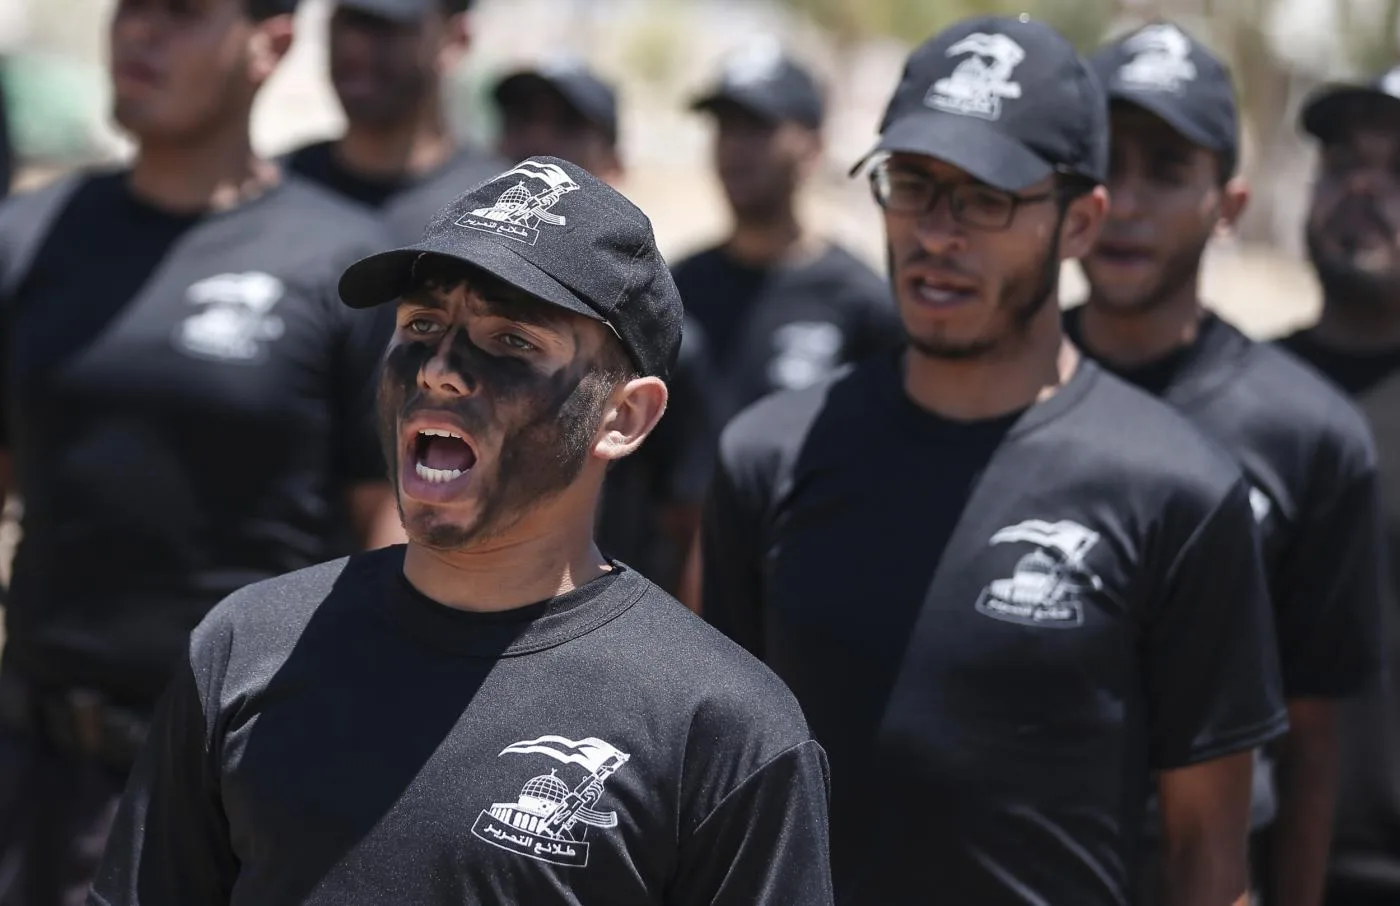 hamas_qassam_brigades_cadets_gaza_july_20_2019_afp